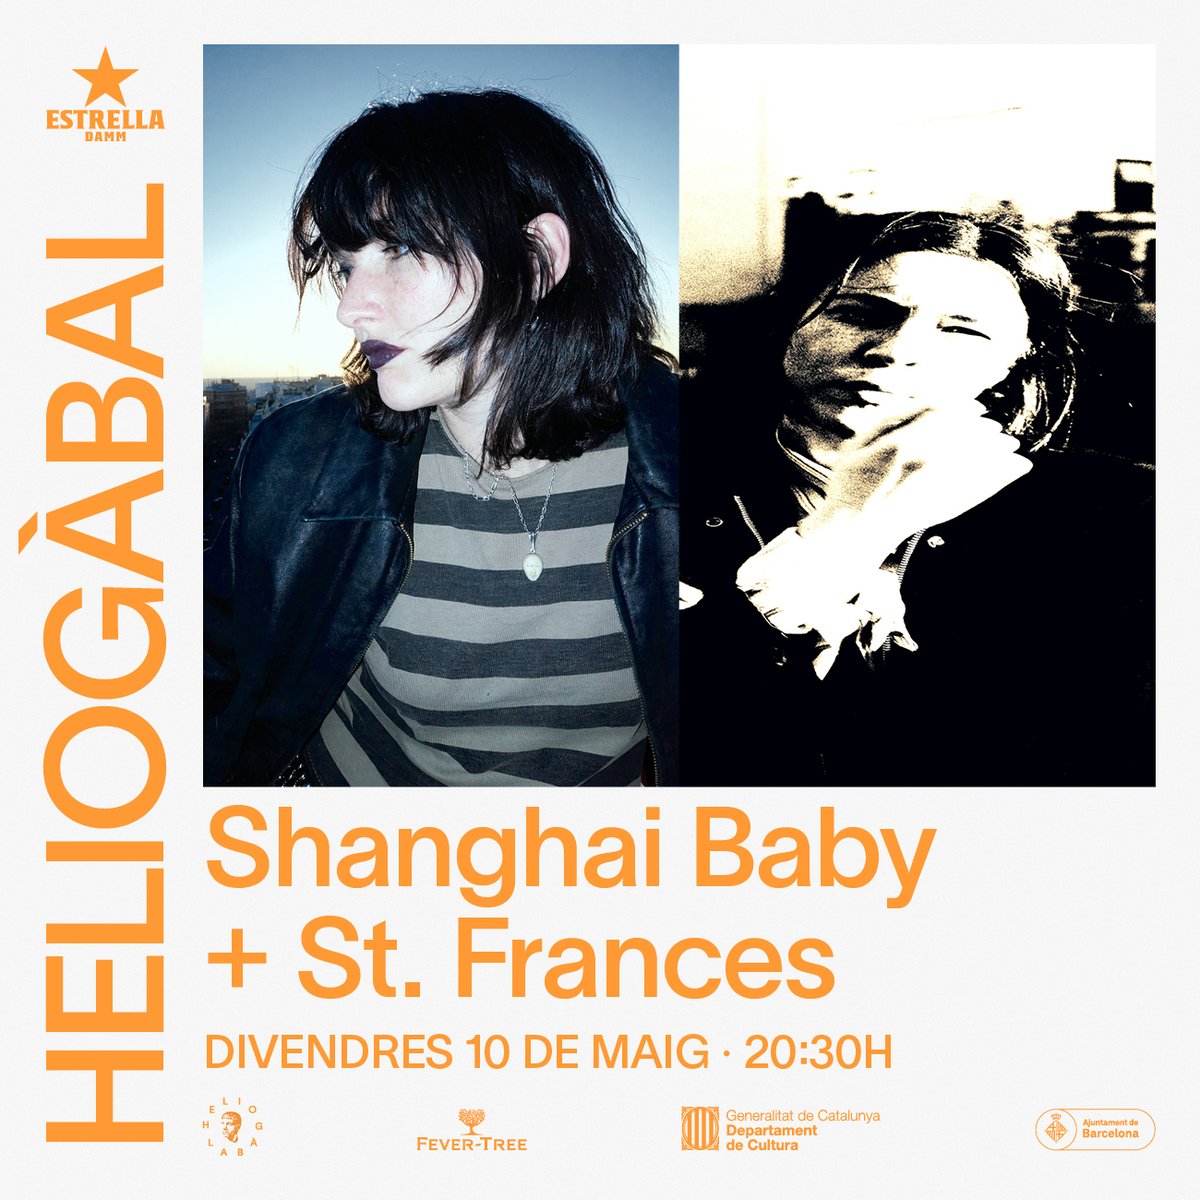 Gràcia i rodalies: Aquest divendres 10 de maig @Shanghaibaby0_0 presenta nou EP a @HeliogabalBcn acompañada de St. Frances com a telonera. 🎟️ link.dice.fm/E77e8eb01c64